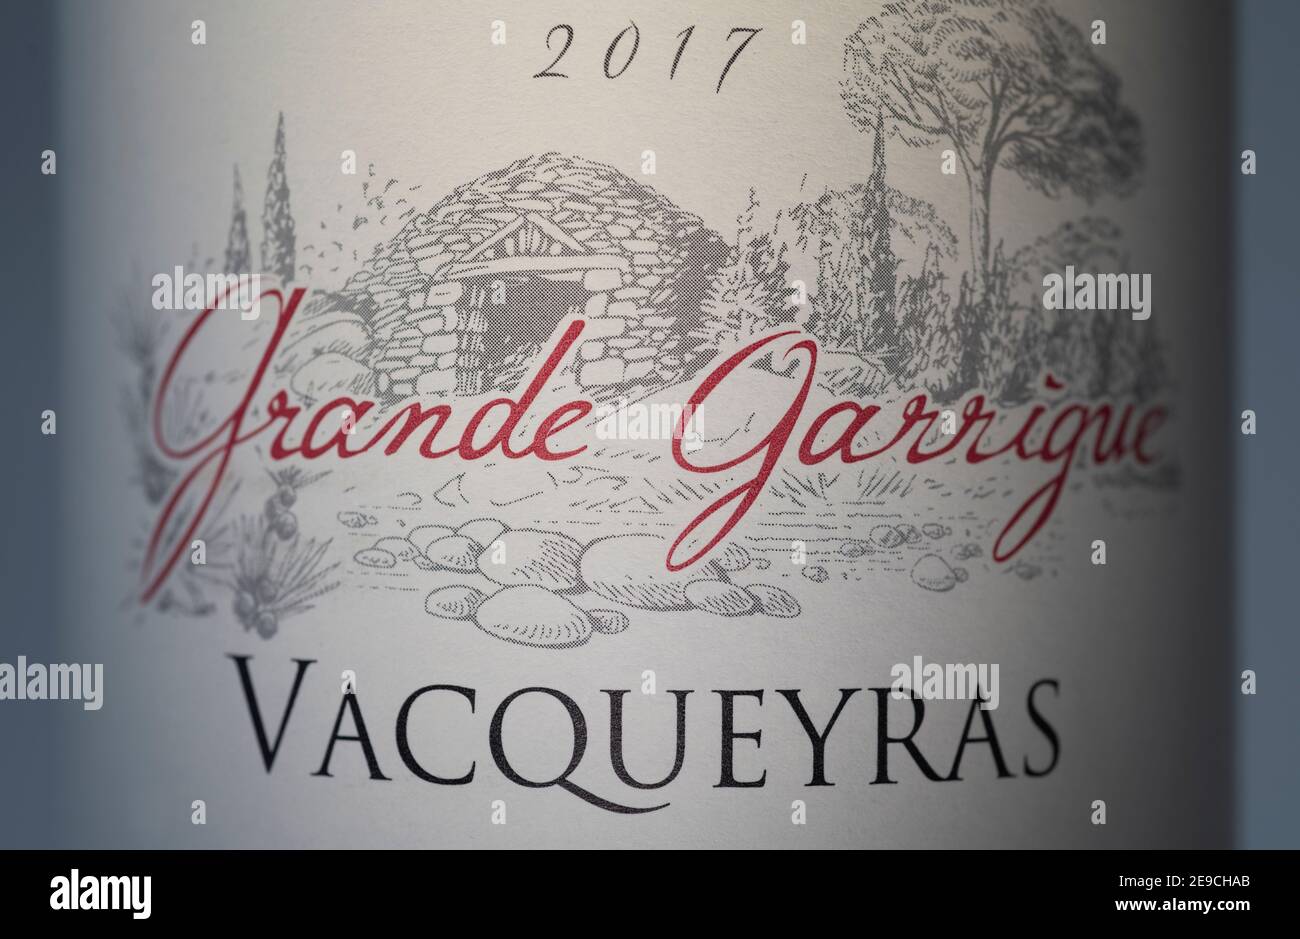 Grande Garrigue Vacqueyras 2017 Sud Français Vallée du Rhône Alain Jaume gros plan sur l'étiquette de vin Banque D'Images